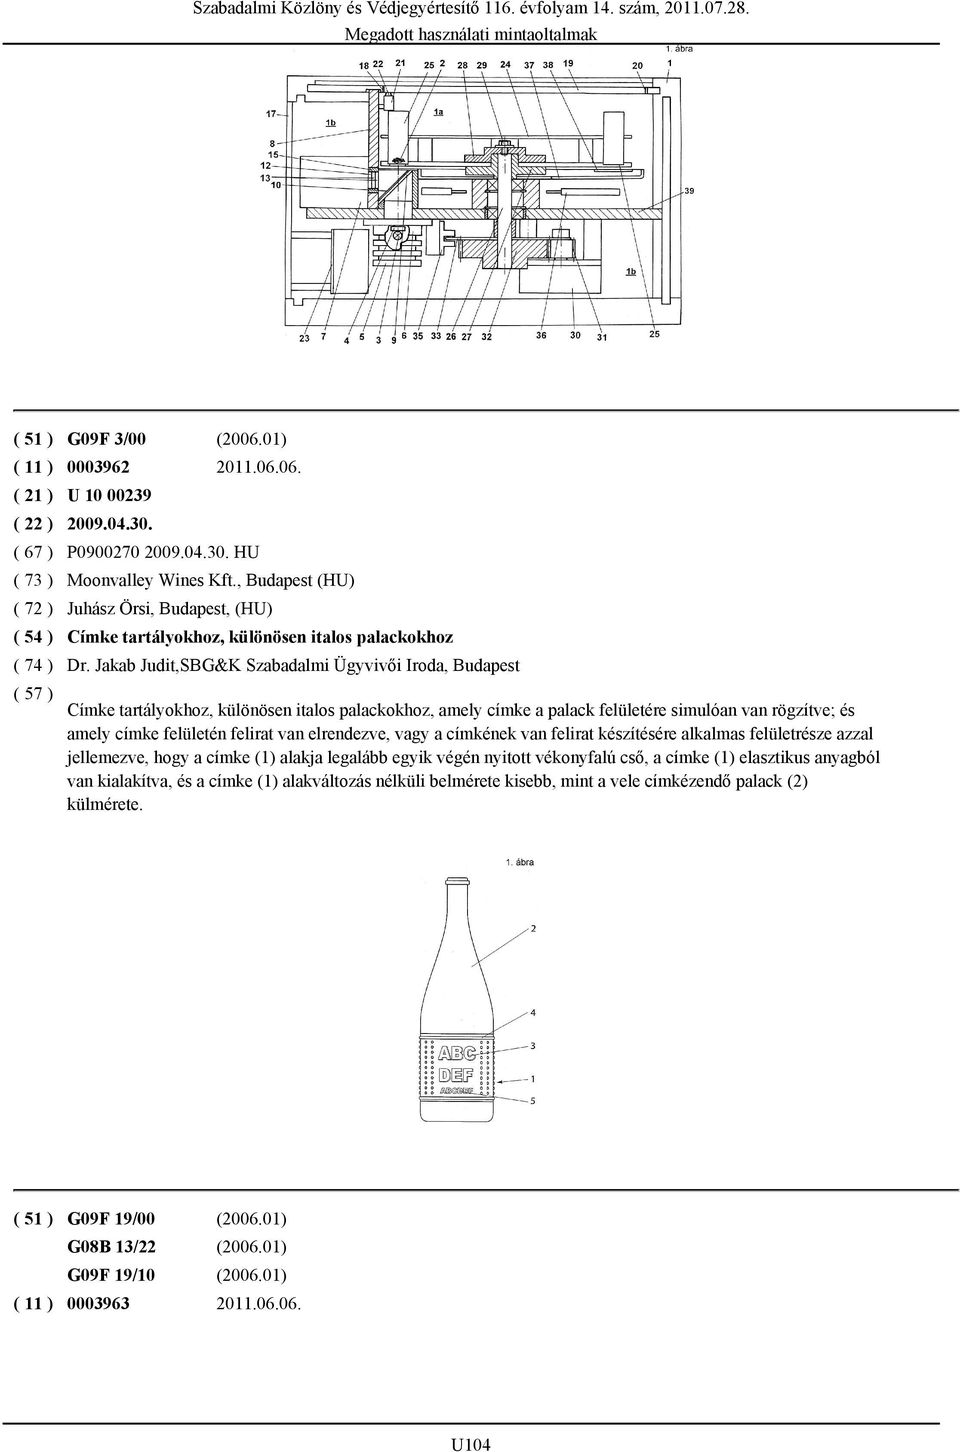 Jakab Judit,SBG&K Szabadalmi Ügyvivői Iroda, Budapest Címke tartályokhoz, különösen italos palackokhoz, amely címke a palack felületére simulóan van rögzítve; és amely címke felületén felirat van